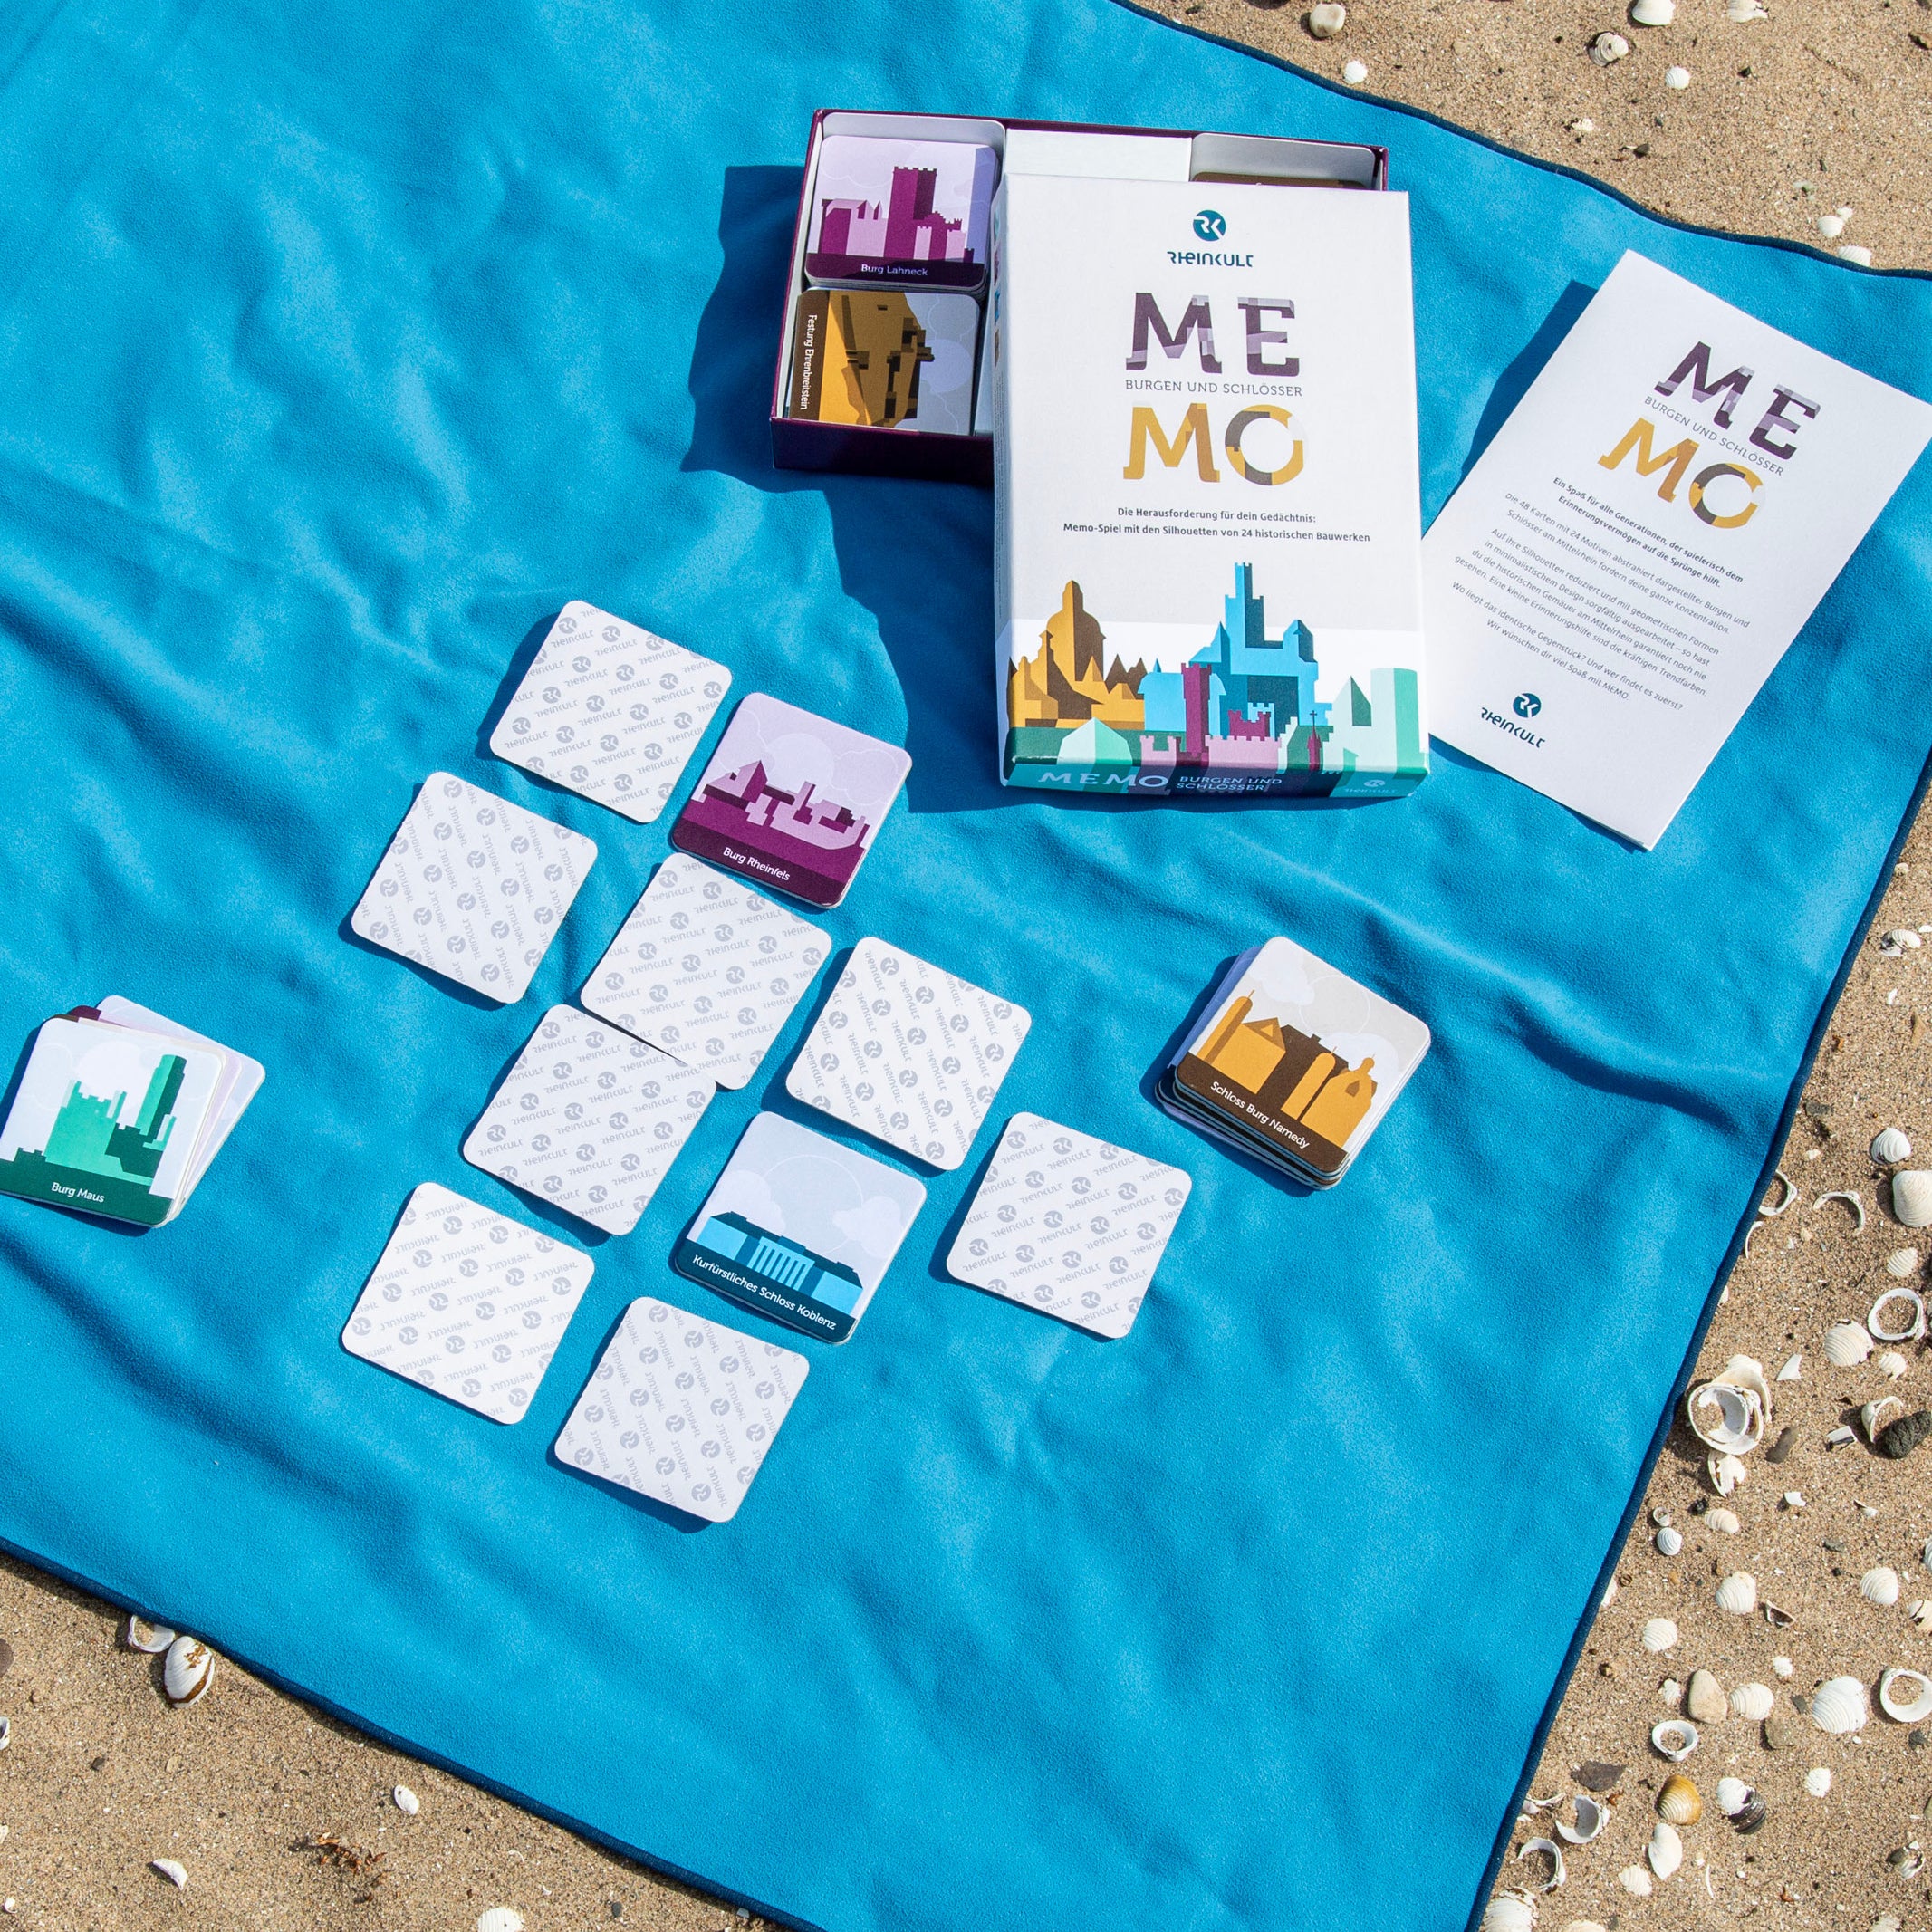 Das „MEMO Burgen und Schlösser“ zum Mittelrhein liegt auf einer blauen Decke an einem Sandstrand. Neben der geöffneten Verpackung liegen einige Spielkarten und ein Heft mit Kurzinfos zur Historie und Lage der im MEMO-Spiel gezeigten Burgen und Schlösser.